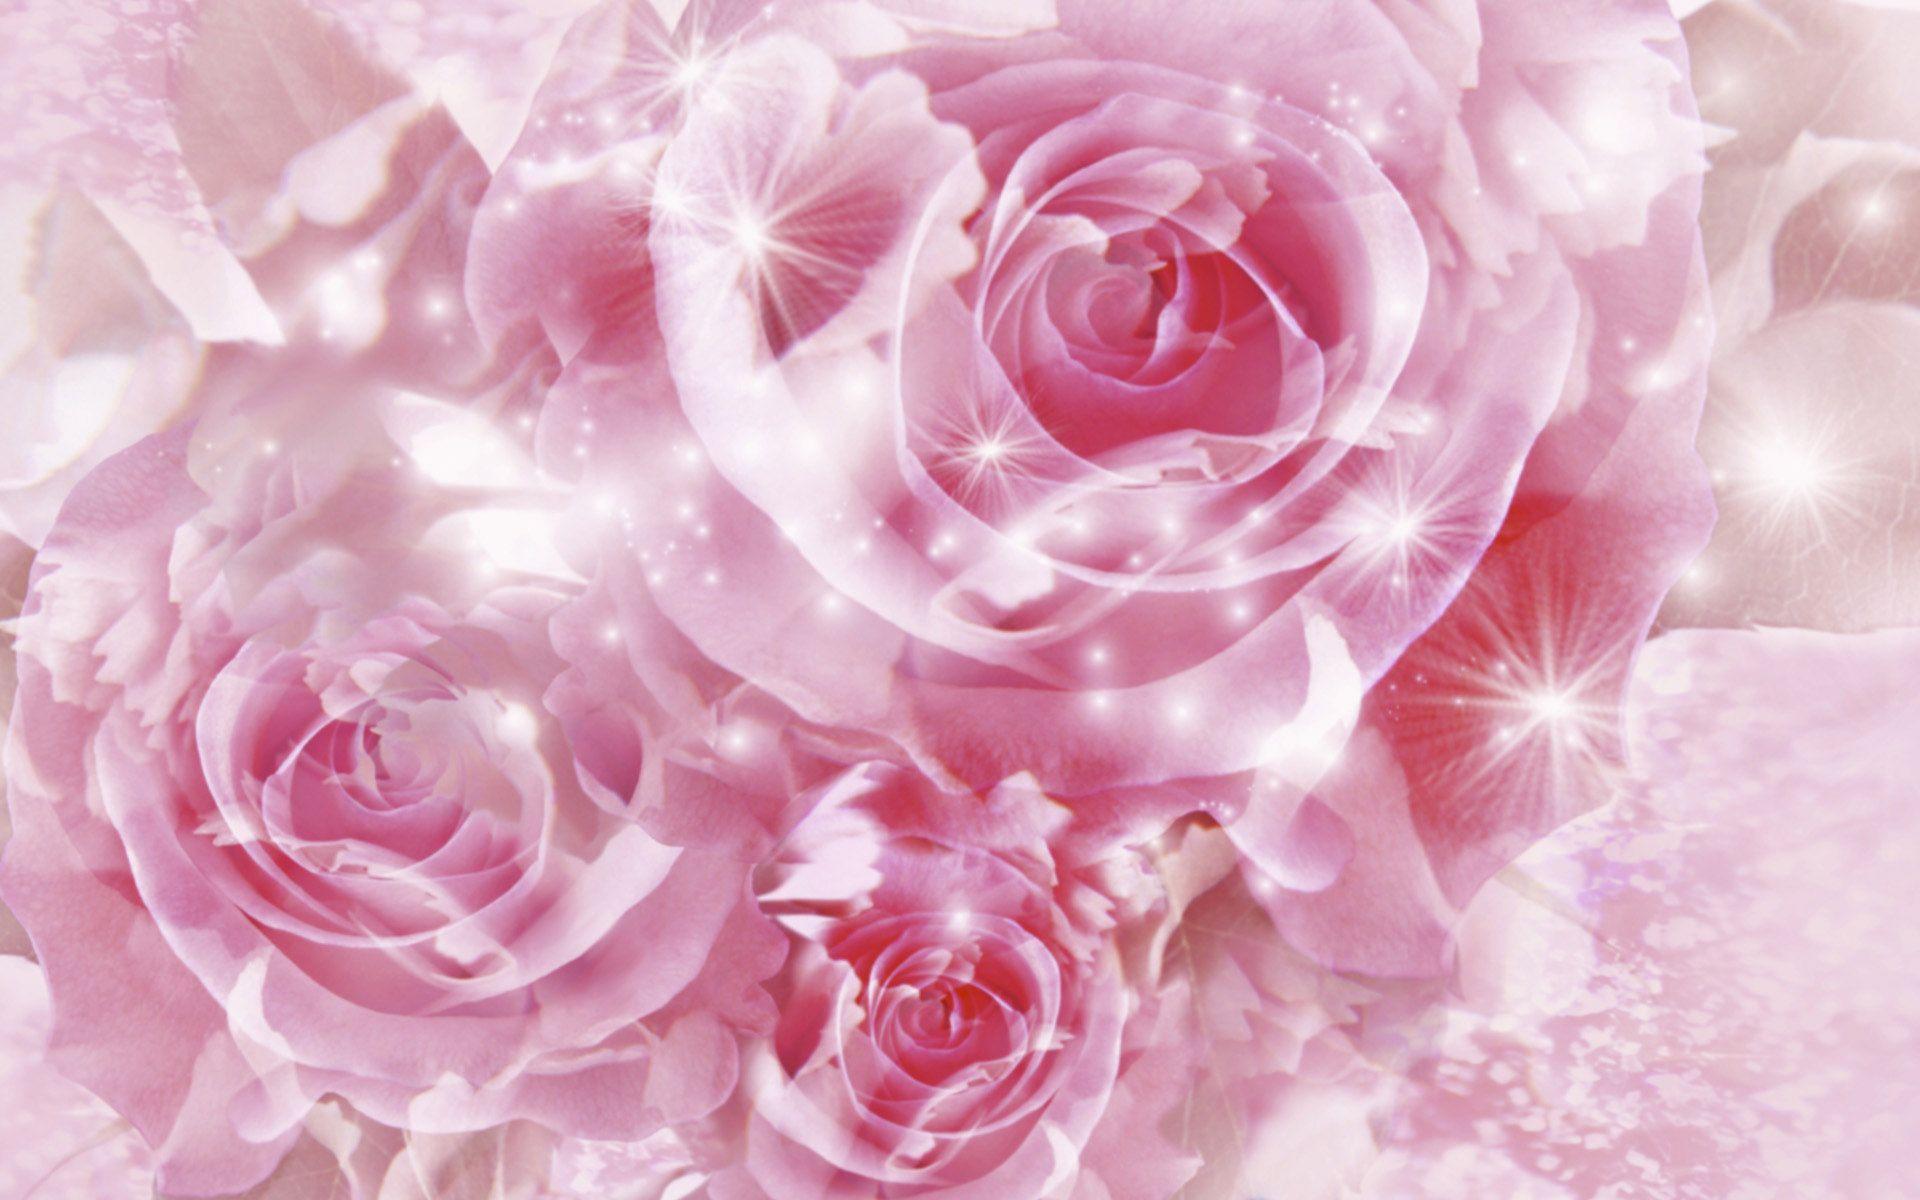 Hình nền hoa hồng: Hình nền hoa hồng ấm áp và đầy cảm xúc. Với sắc hồng nhẹ nhàng, mang lại cảm giác tình cảm và sự đong đầy của cuộc sống, đây sẽ là lựa chọn hoàn hảo cho bạn. Nhấp vào ảnh và tìm thấy sự trân trọng cho cảm xúc đong đầy trong cuộc sống của mình.